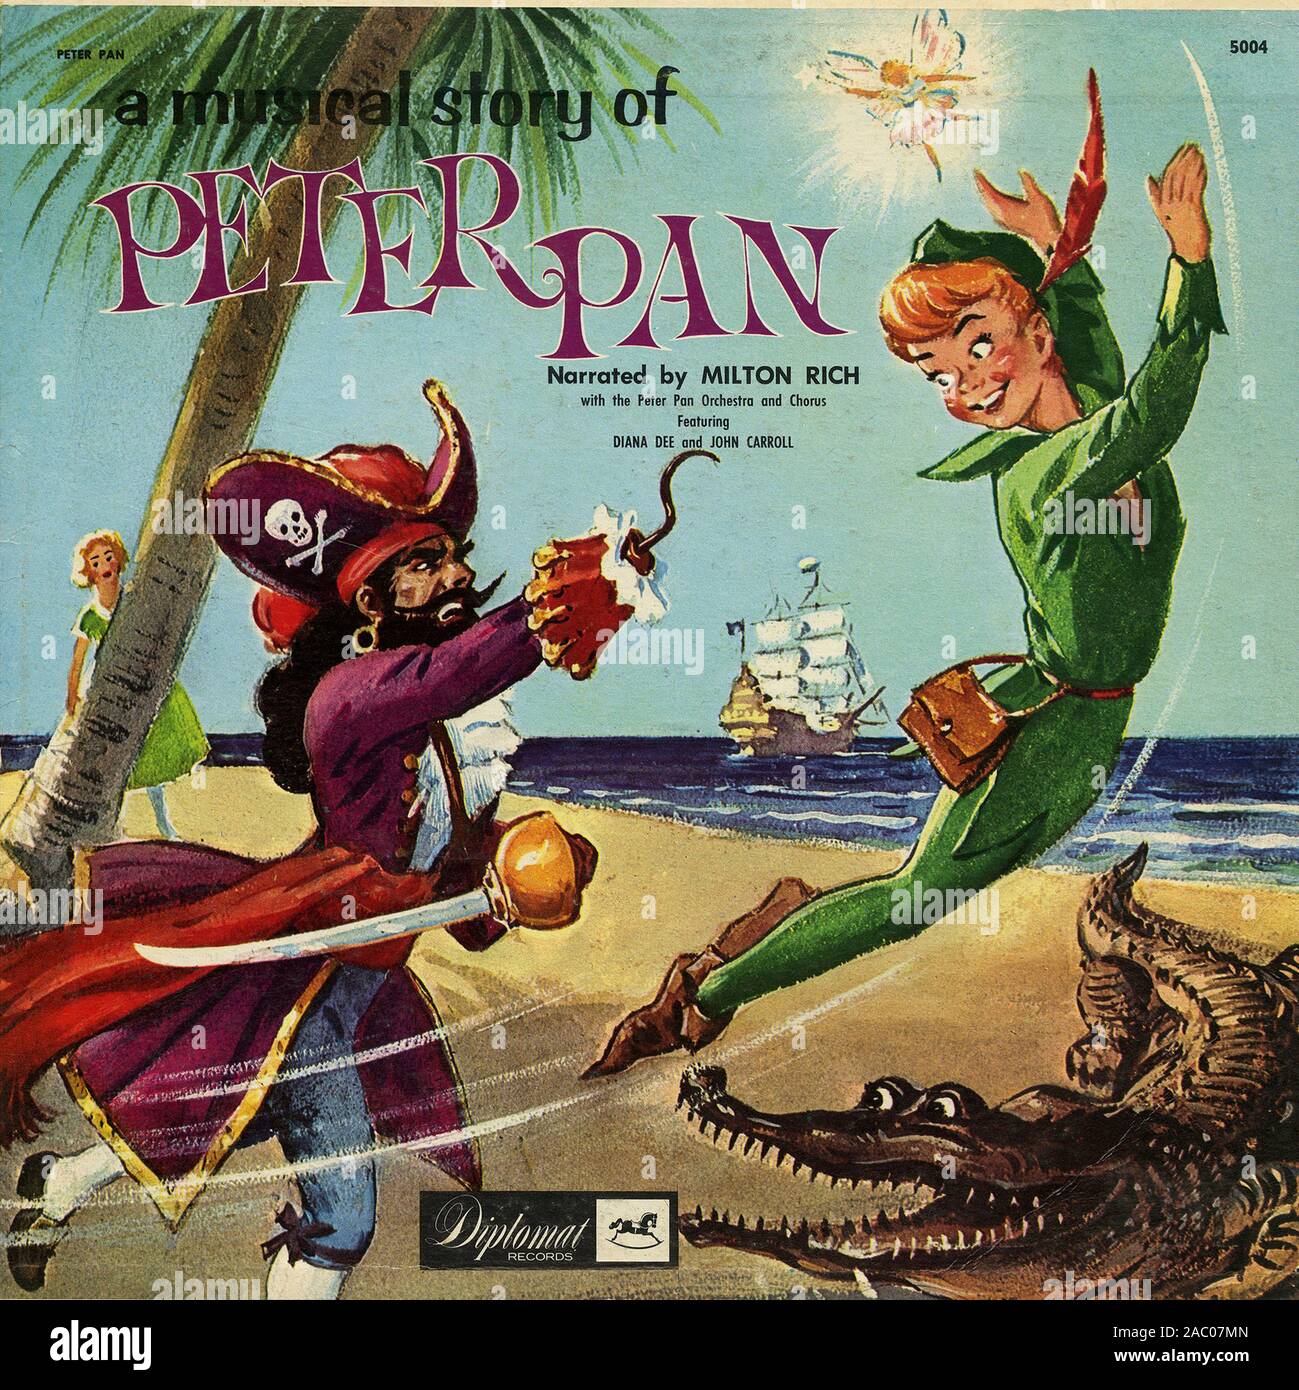 Une histoire musicale de Peter Pan - couverture de l'album vinyle vintage  Photo Stock - Alamy